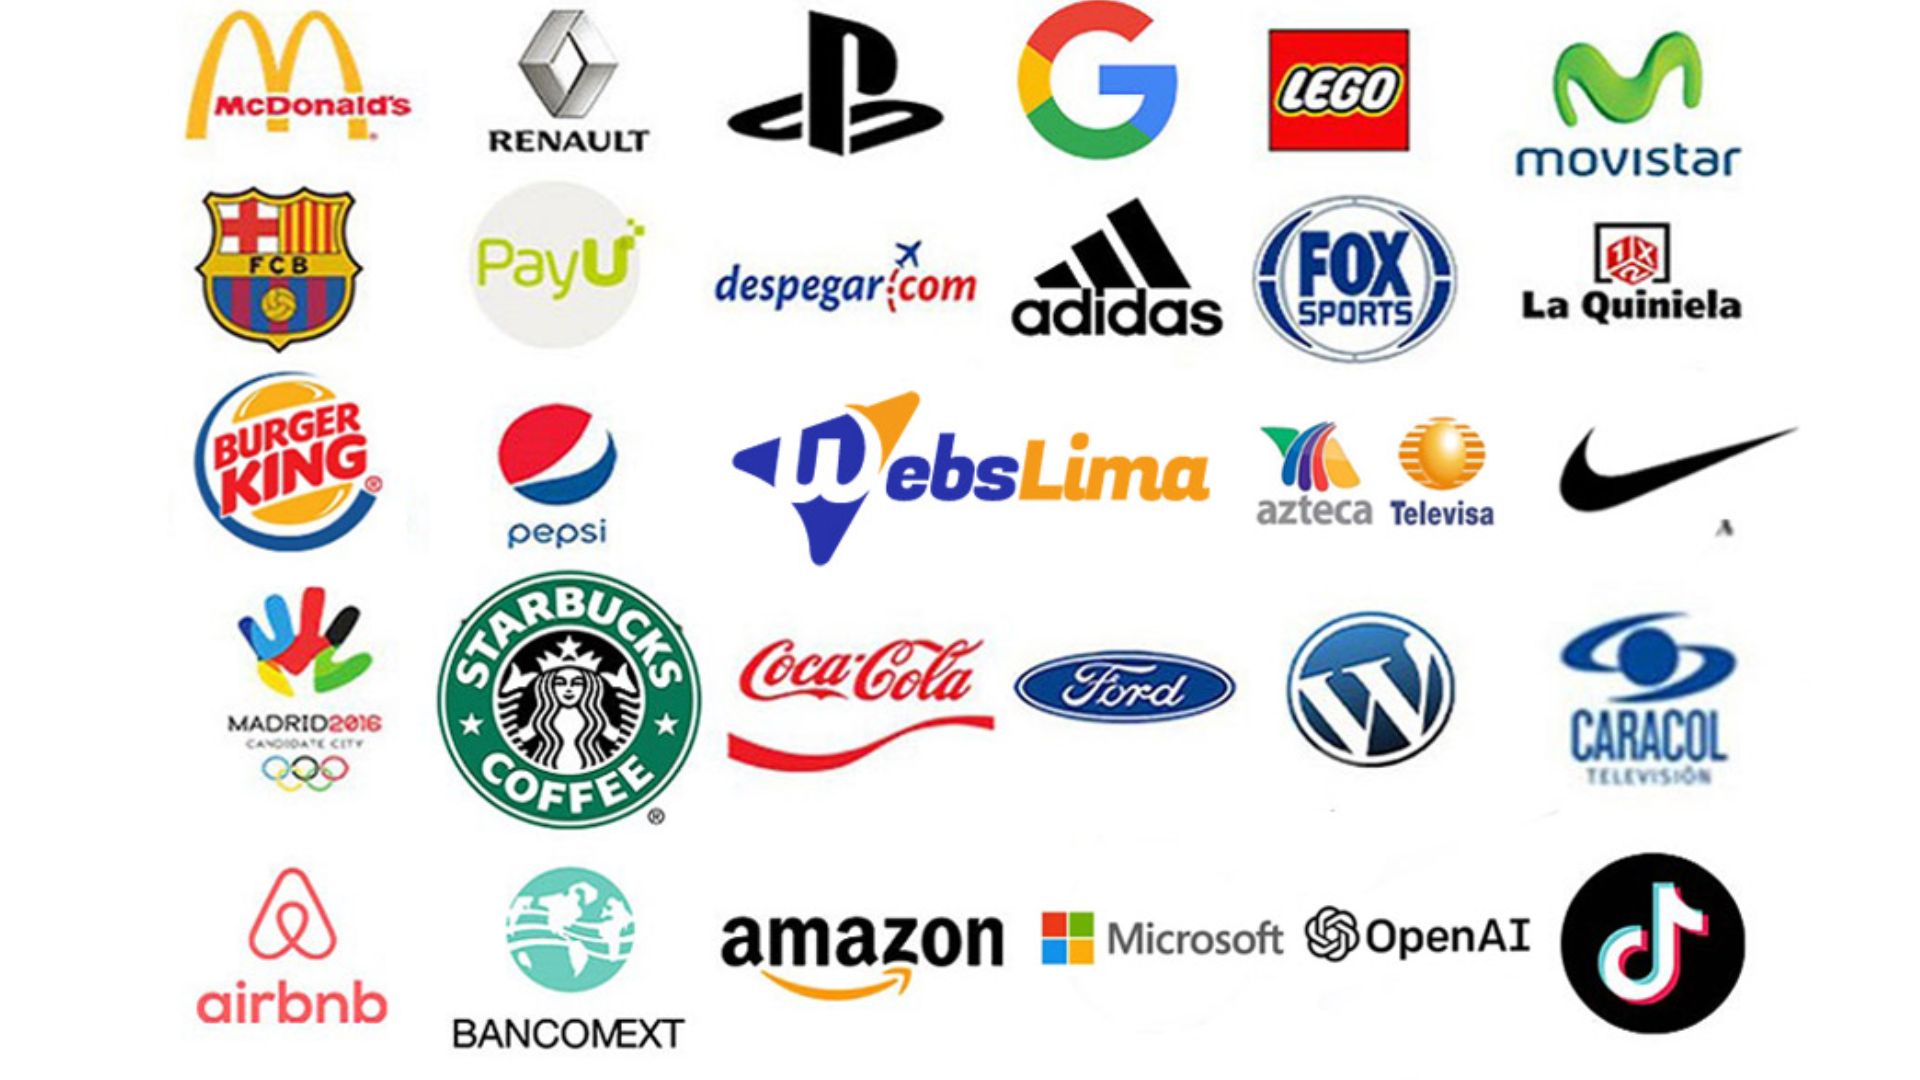 ¿Cuáles son las empresas más admiradas y cómo se comparan?